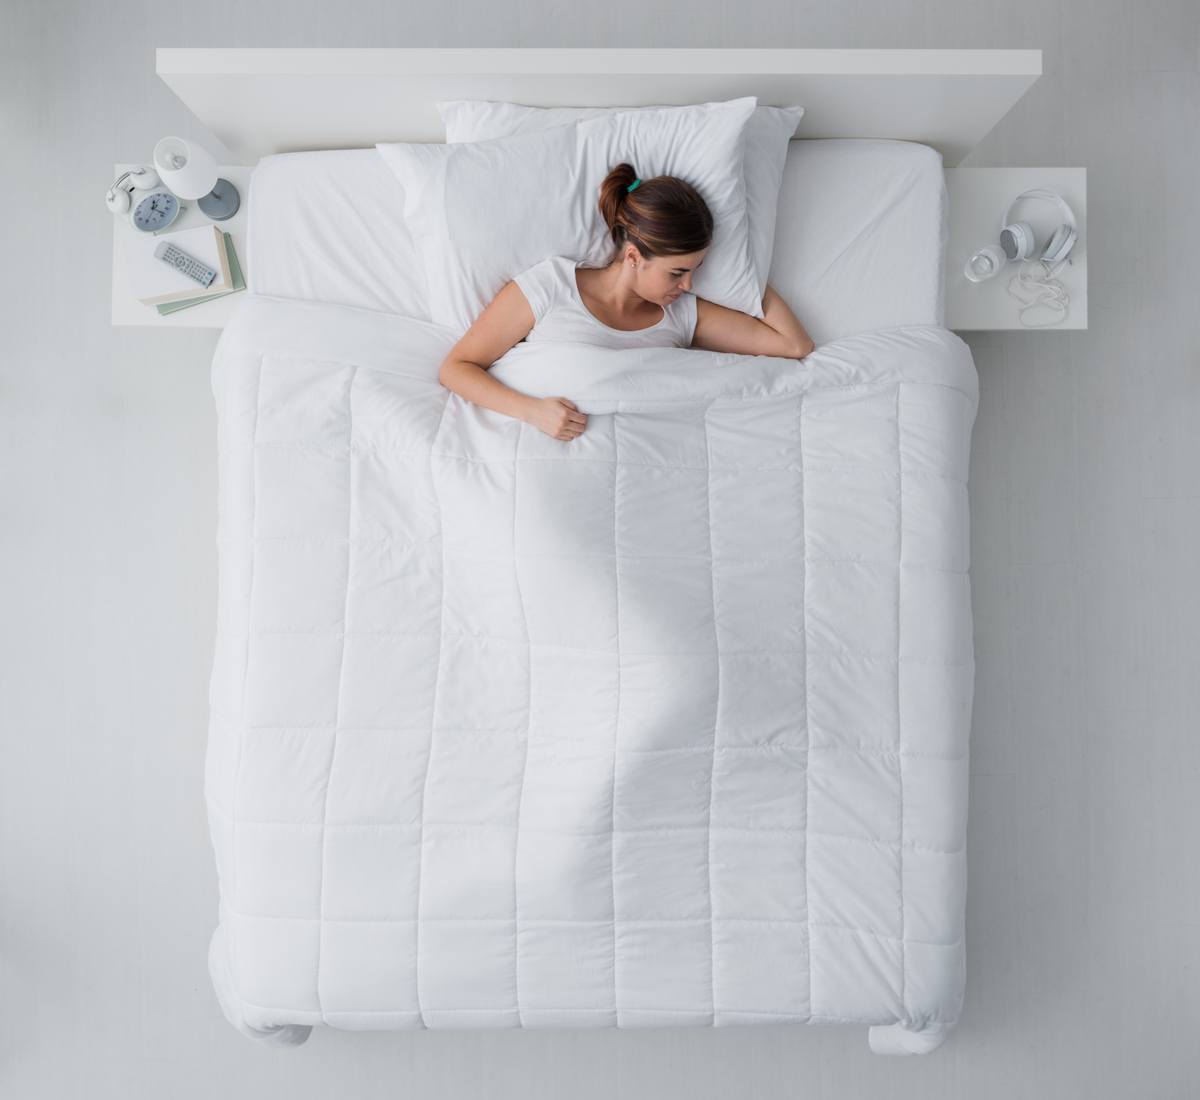 https://www.mattressclarity.com/wp-content/uploads/2018/03/duvets-comforters-difference-comfortertopshot.jpg